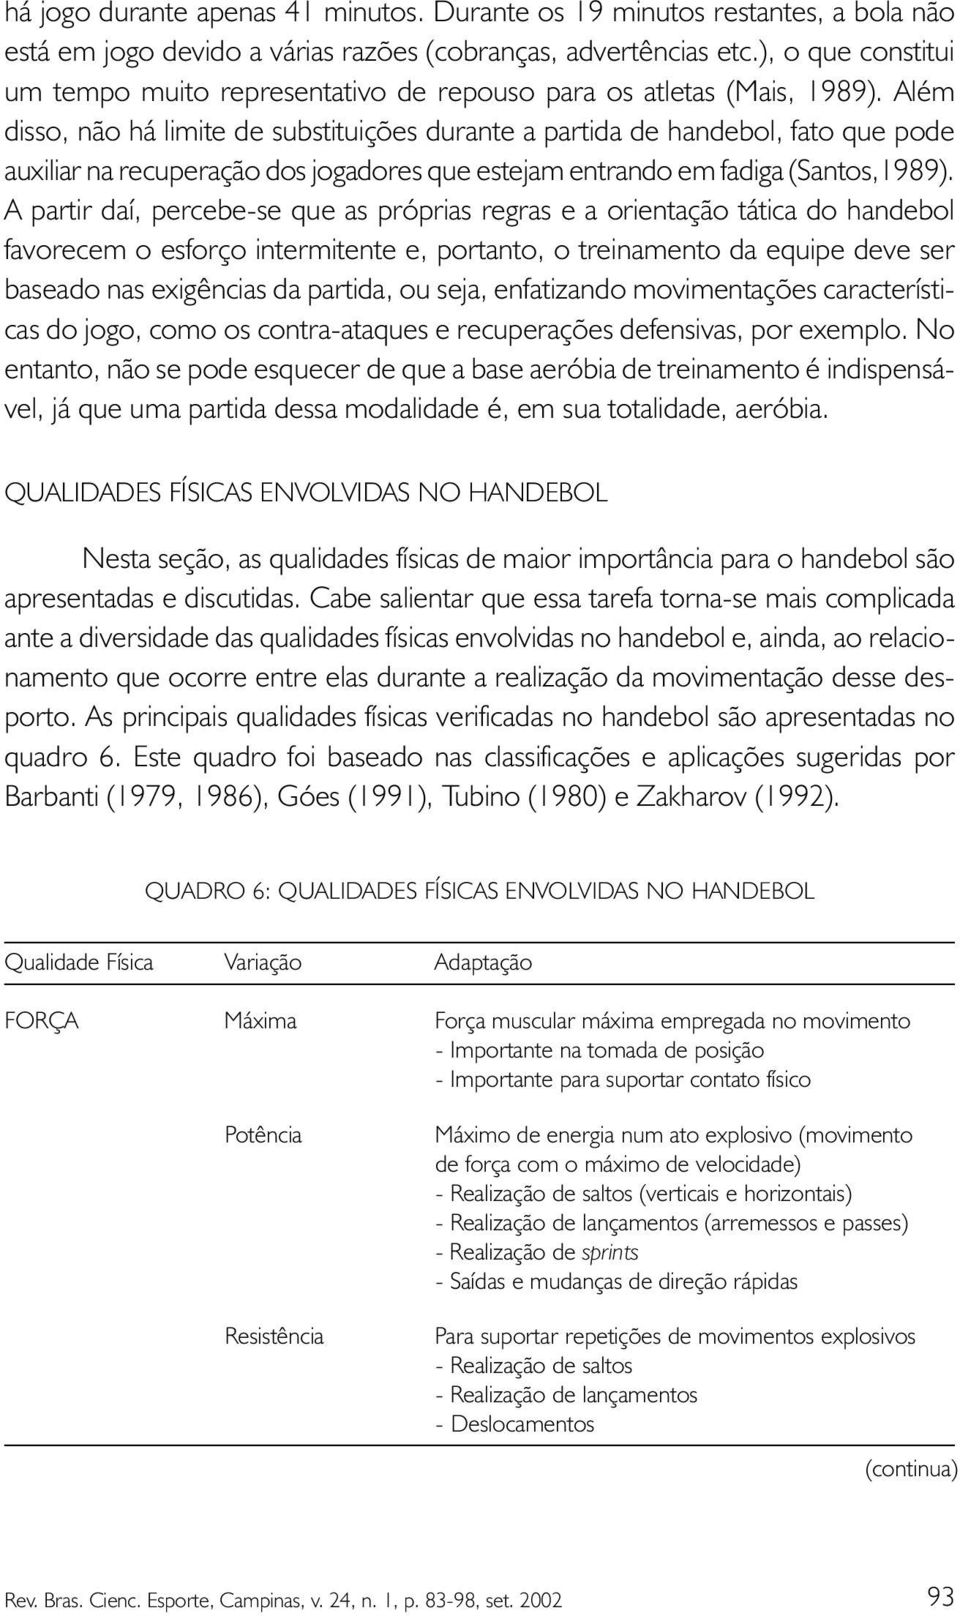 Além disso, não há limite de substituições durante a partida de handebol, fato que pode auxiliar na recuperação dos jogadores que estejam entrando em fadiga (Santos,1989).